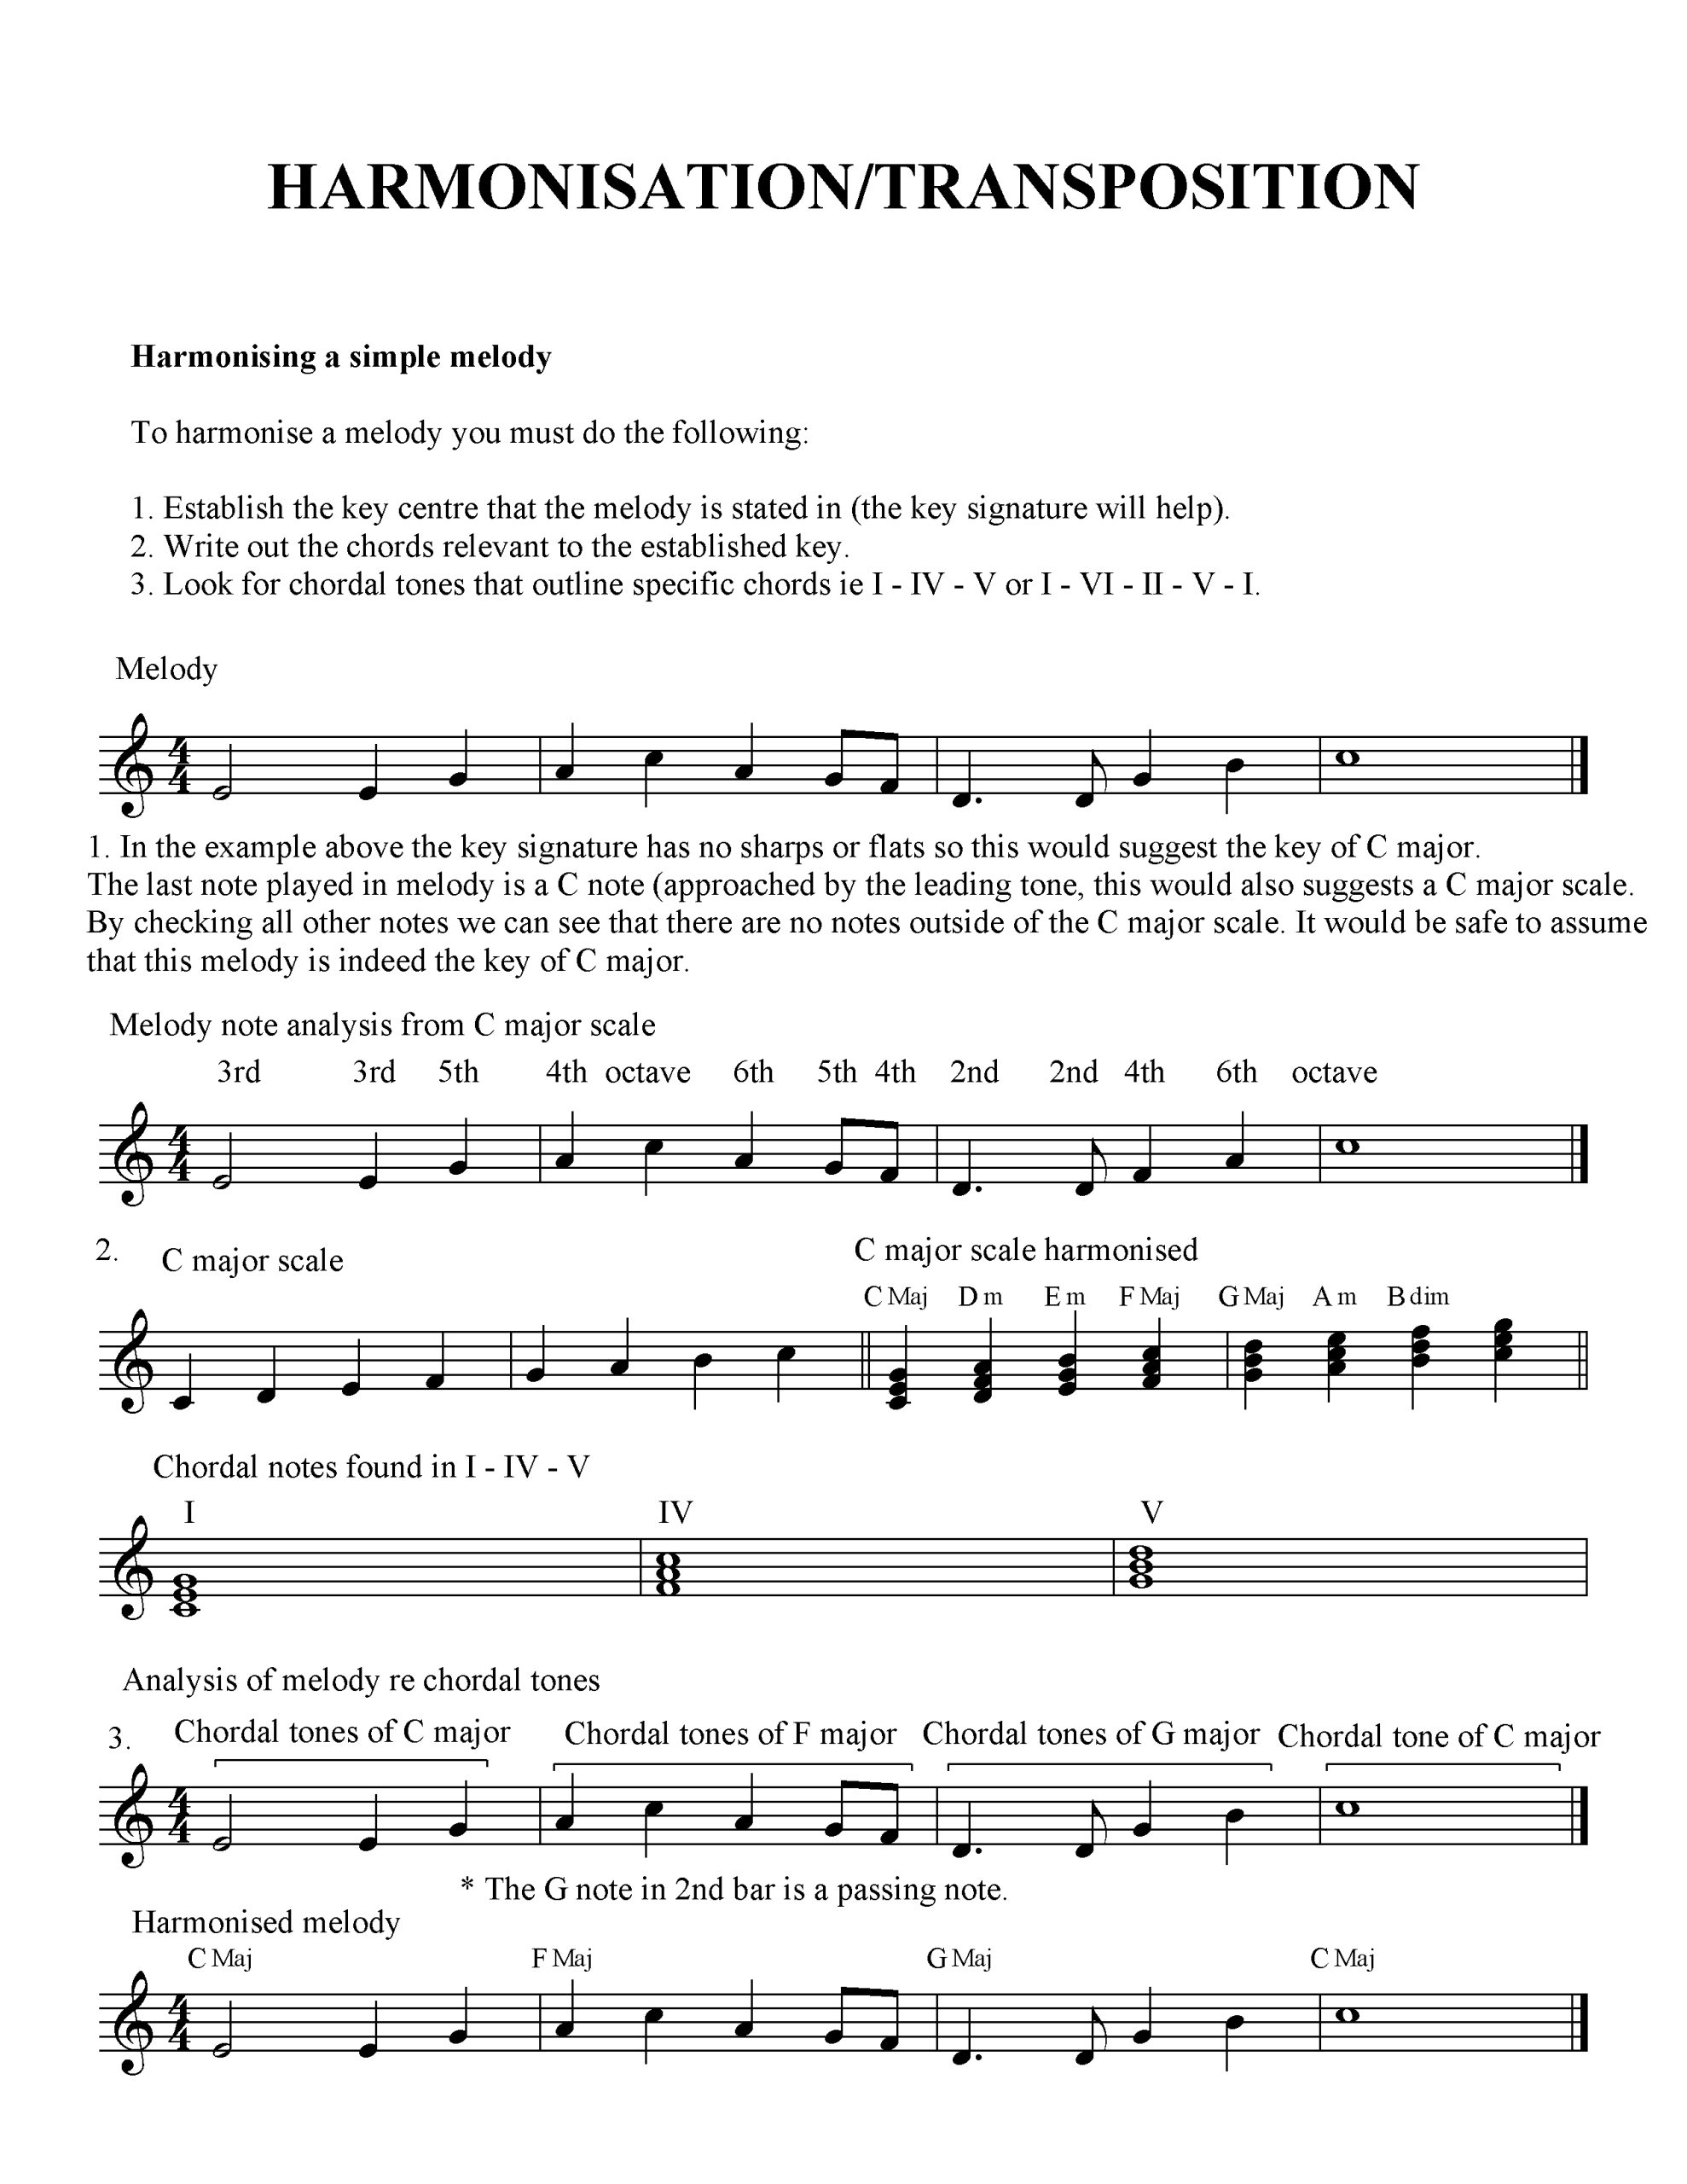 harmonisation & transposition